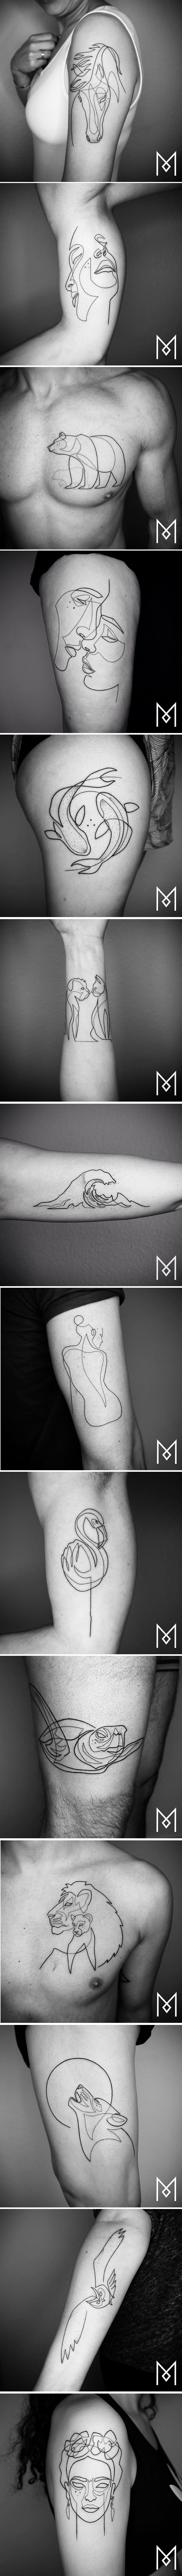 Unikatne tetovaže nastale od jedne neisprekidane linije ostavljaju bez daha